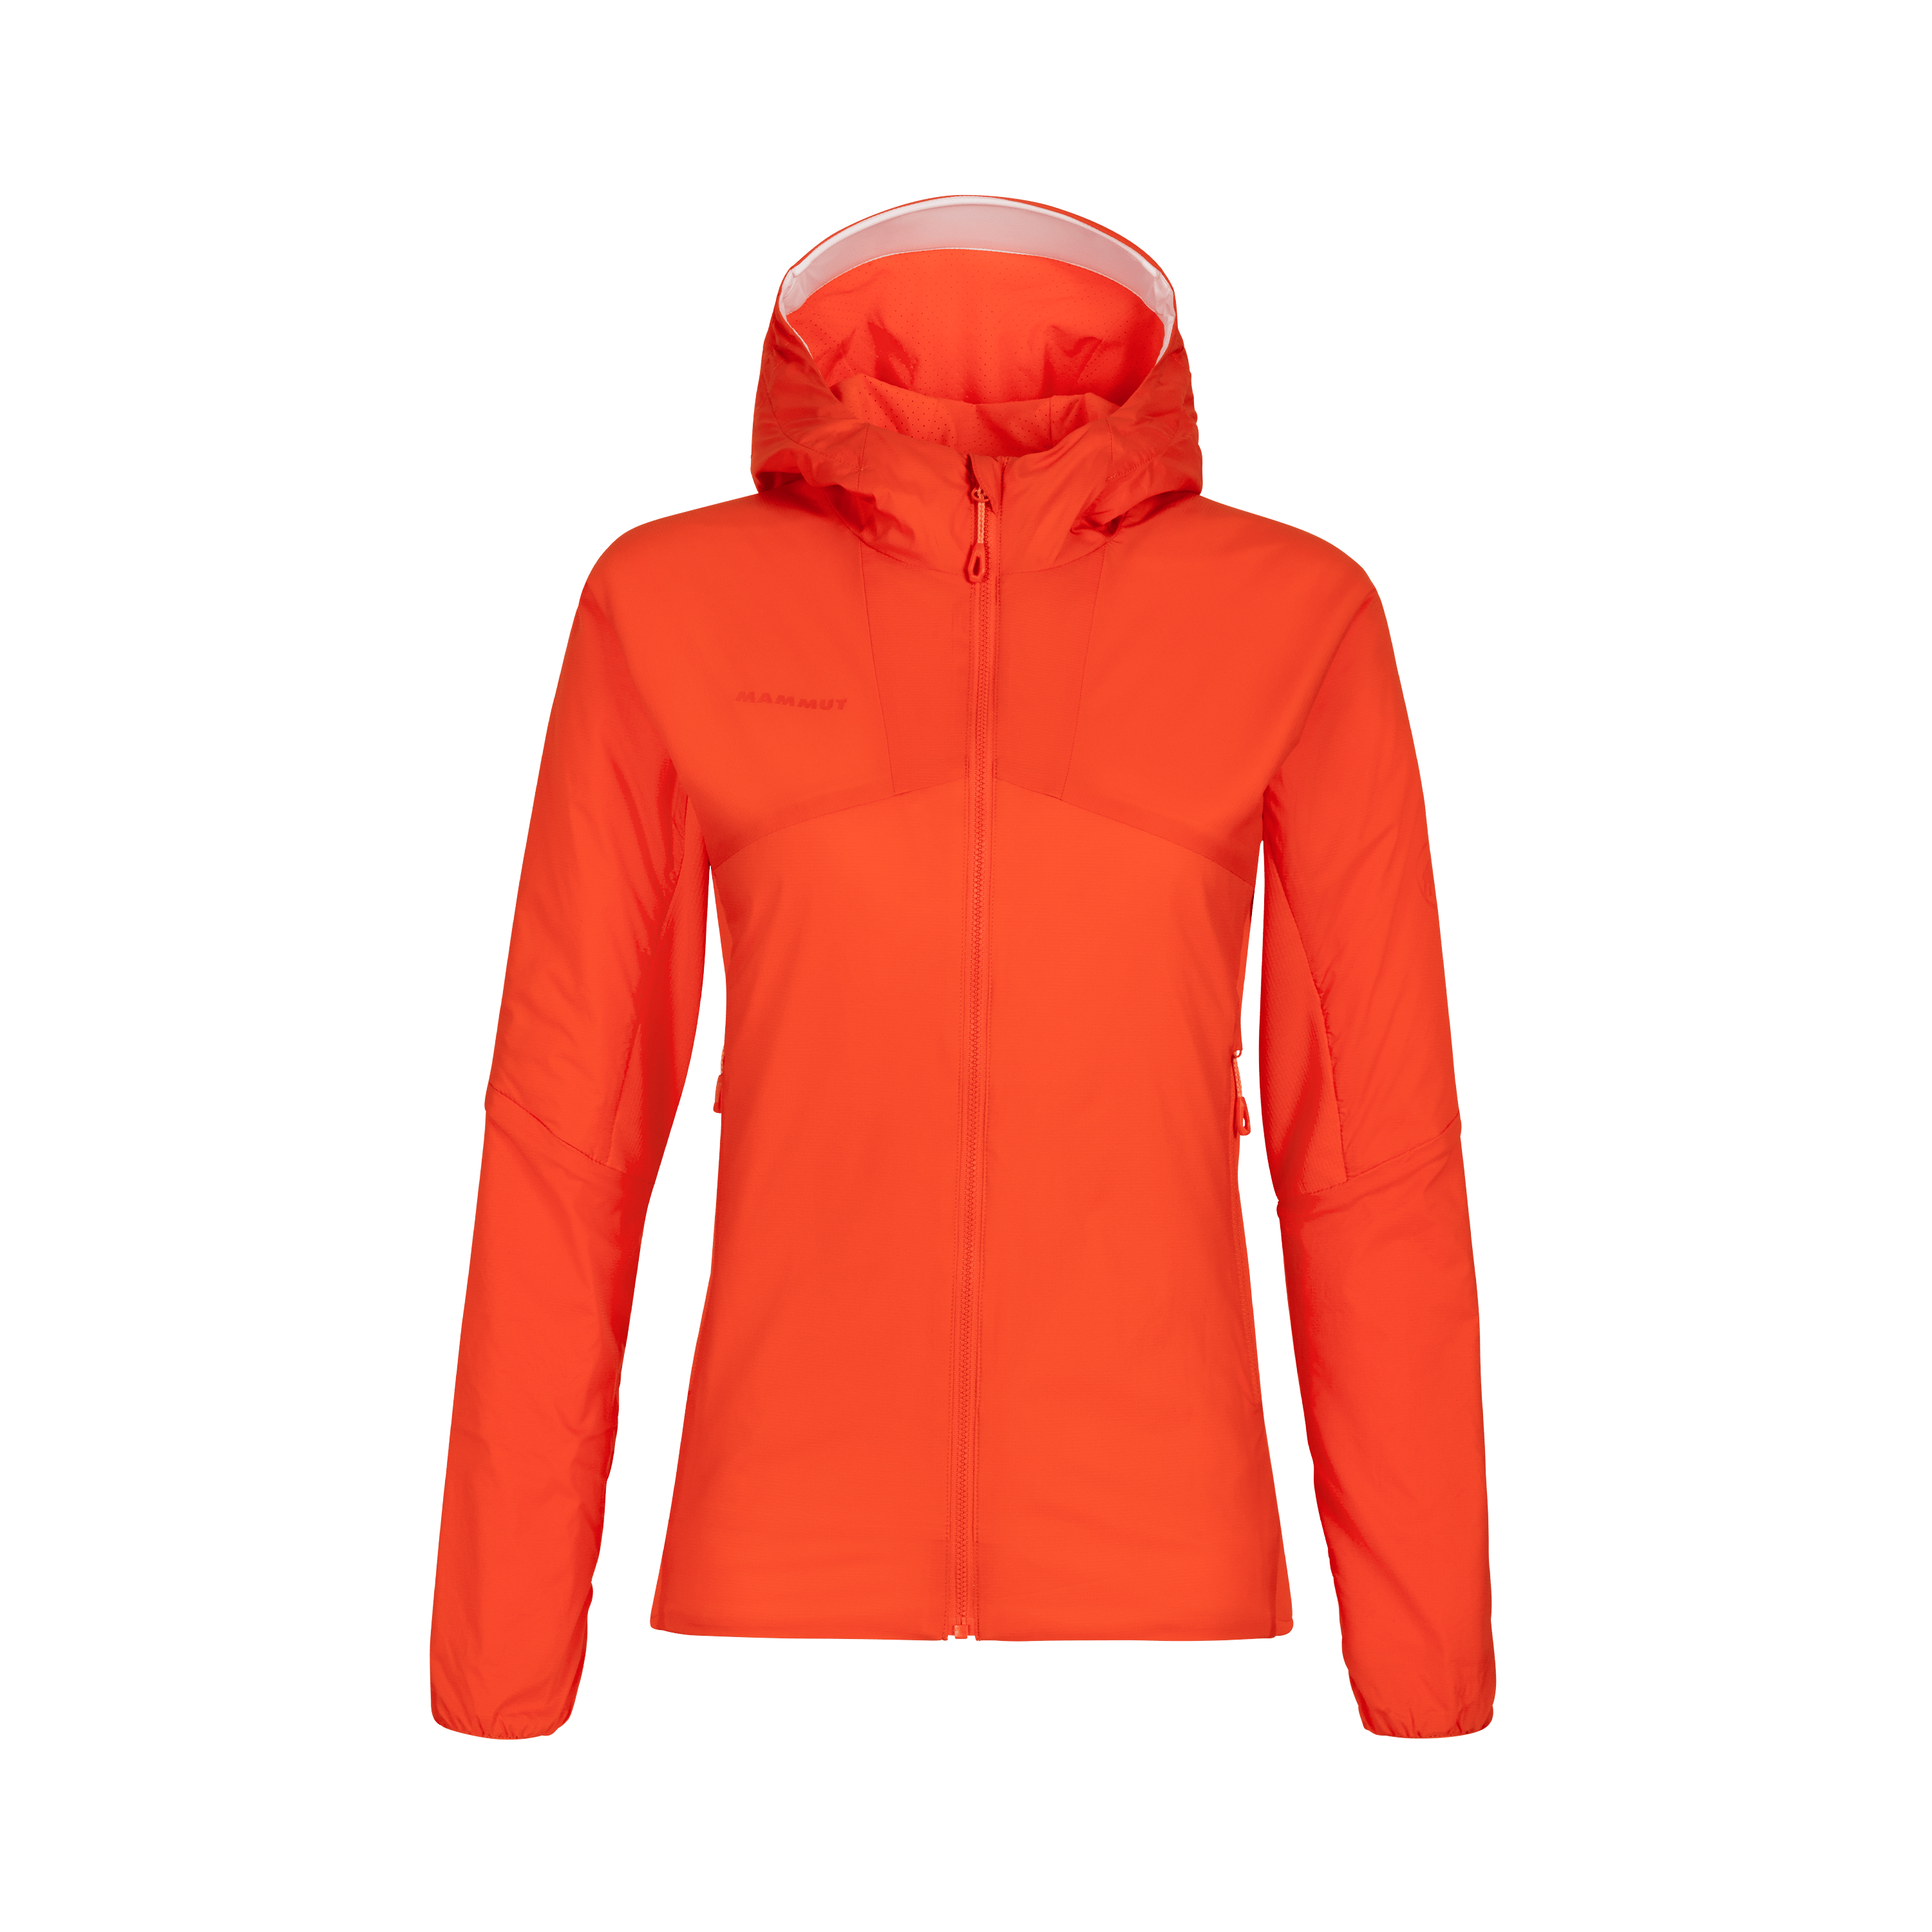 Rime Light IN Flex Hooded Jacket Women - poinciana, XL thumbnail